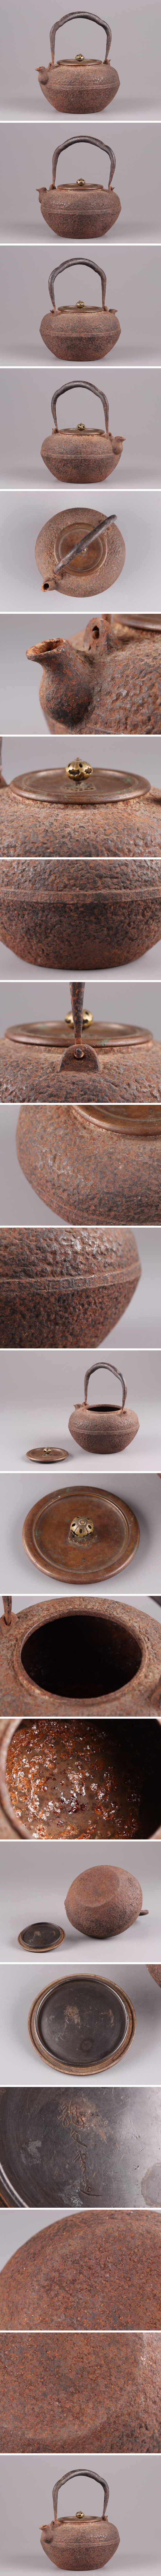 通販値段煎茶道具 龍文堂造 時代鉄瓶 銅製蓋 時代物 極上品 初だし品 3746 鉄瓶